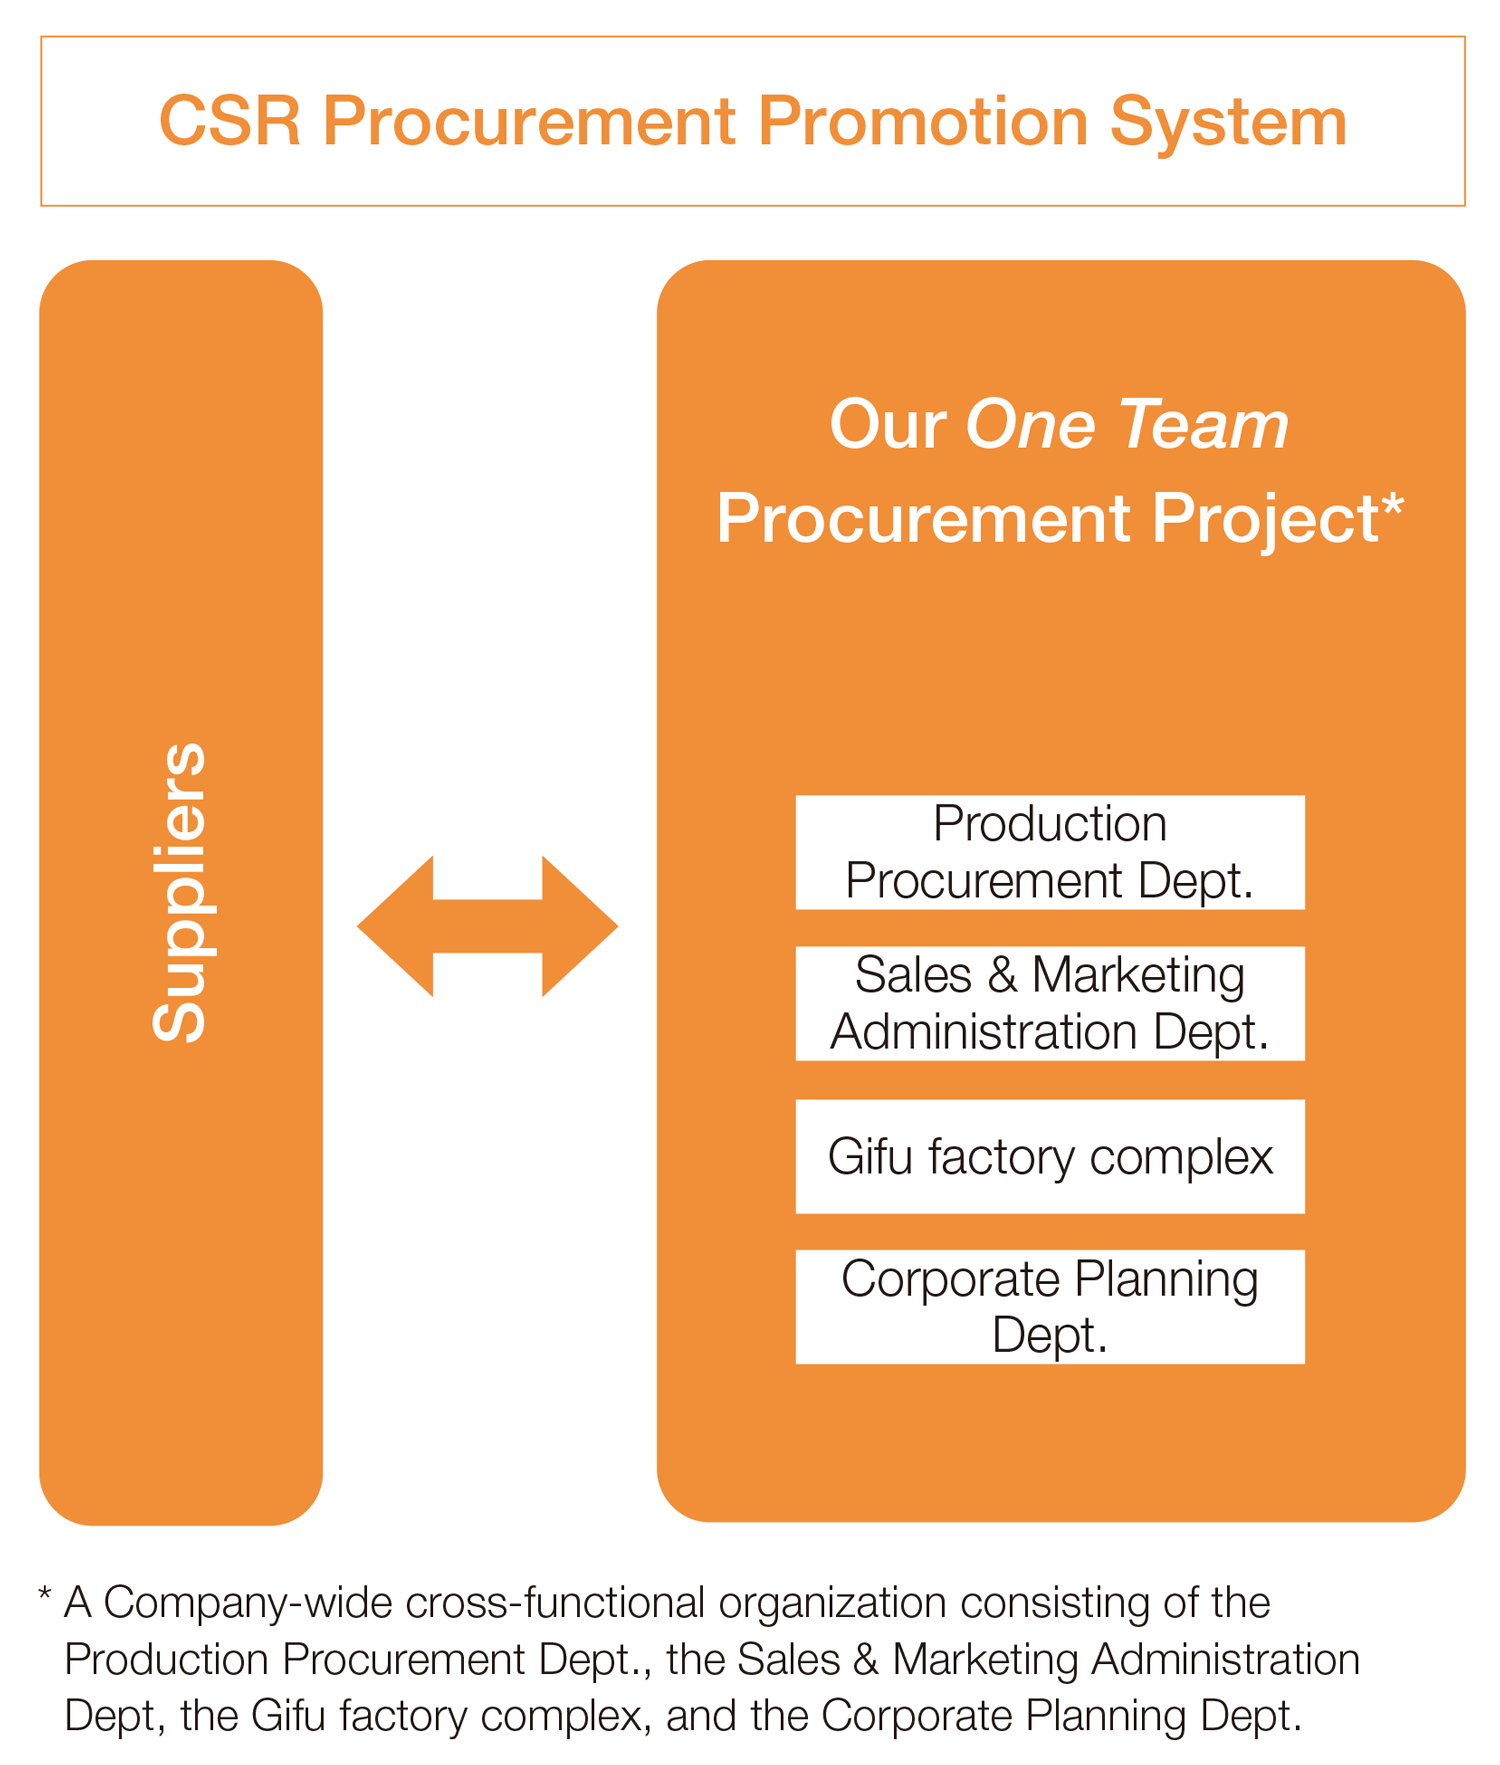 CSR Procurement Promotion System